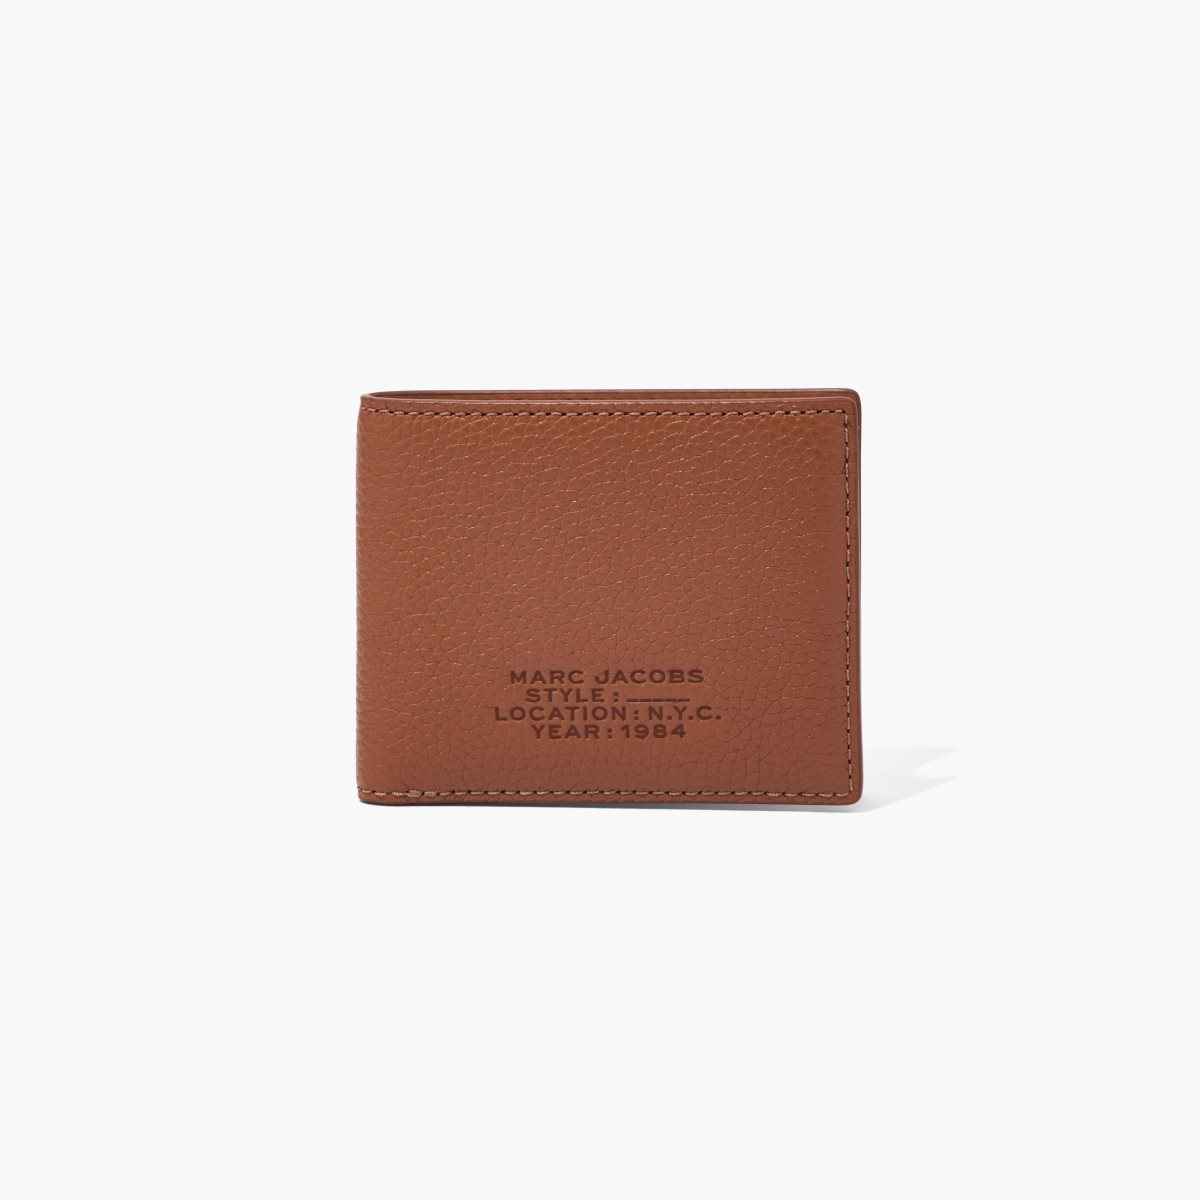 Marc Jacobs Leather Billfold Wallet Argan Oil | DZI-069184